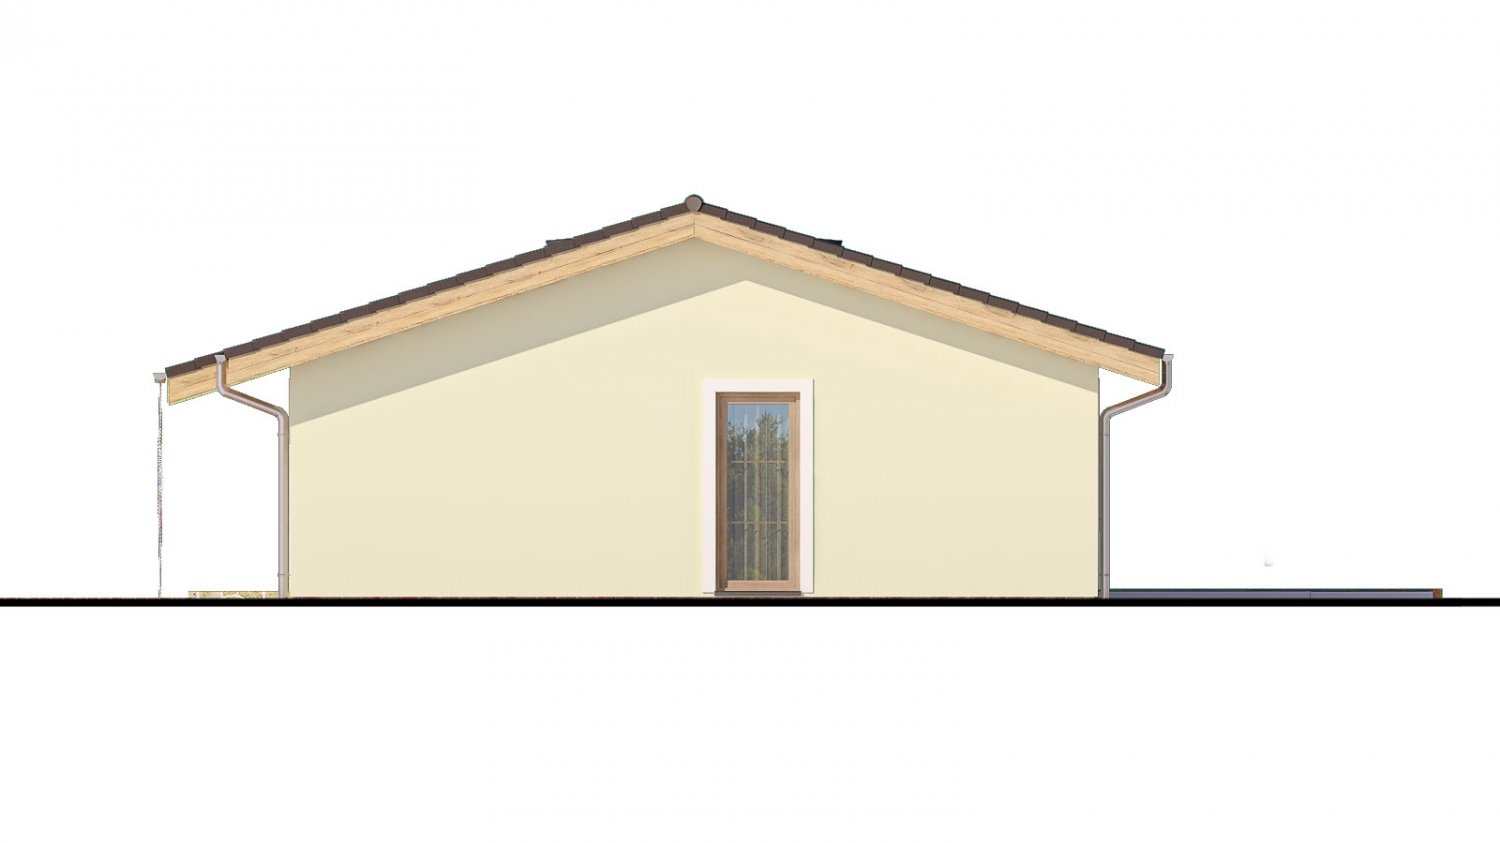 Murovaný projekt rodinného domu na úzky pozemok so sedlovou strechou. Spracovaný v 3d realite s umiestnením na pozemok.